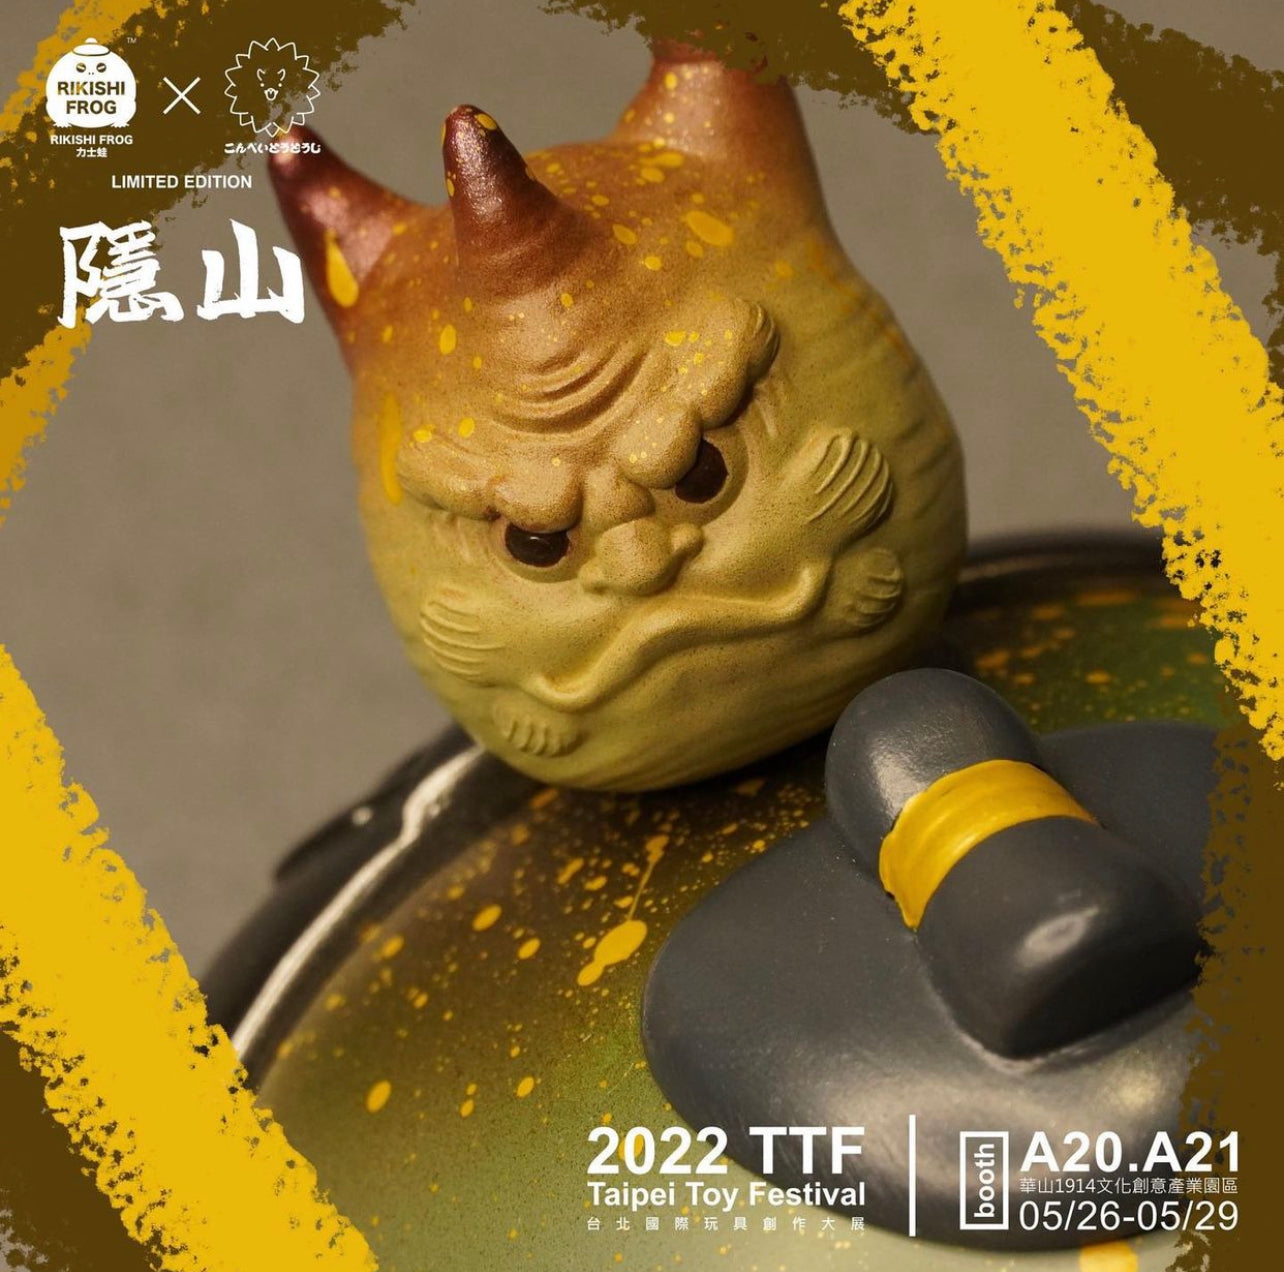 Rikishi Frog TTF 2022 Exclusive